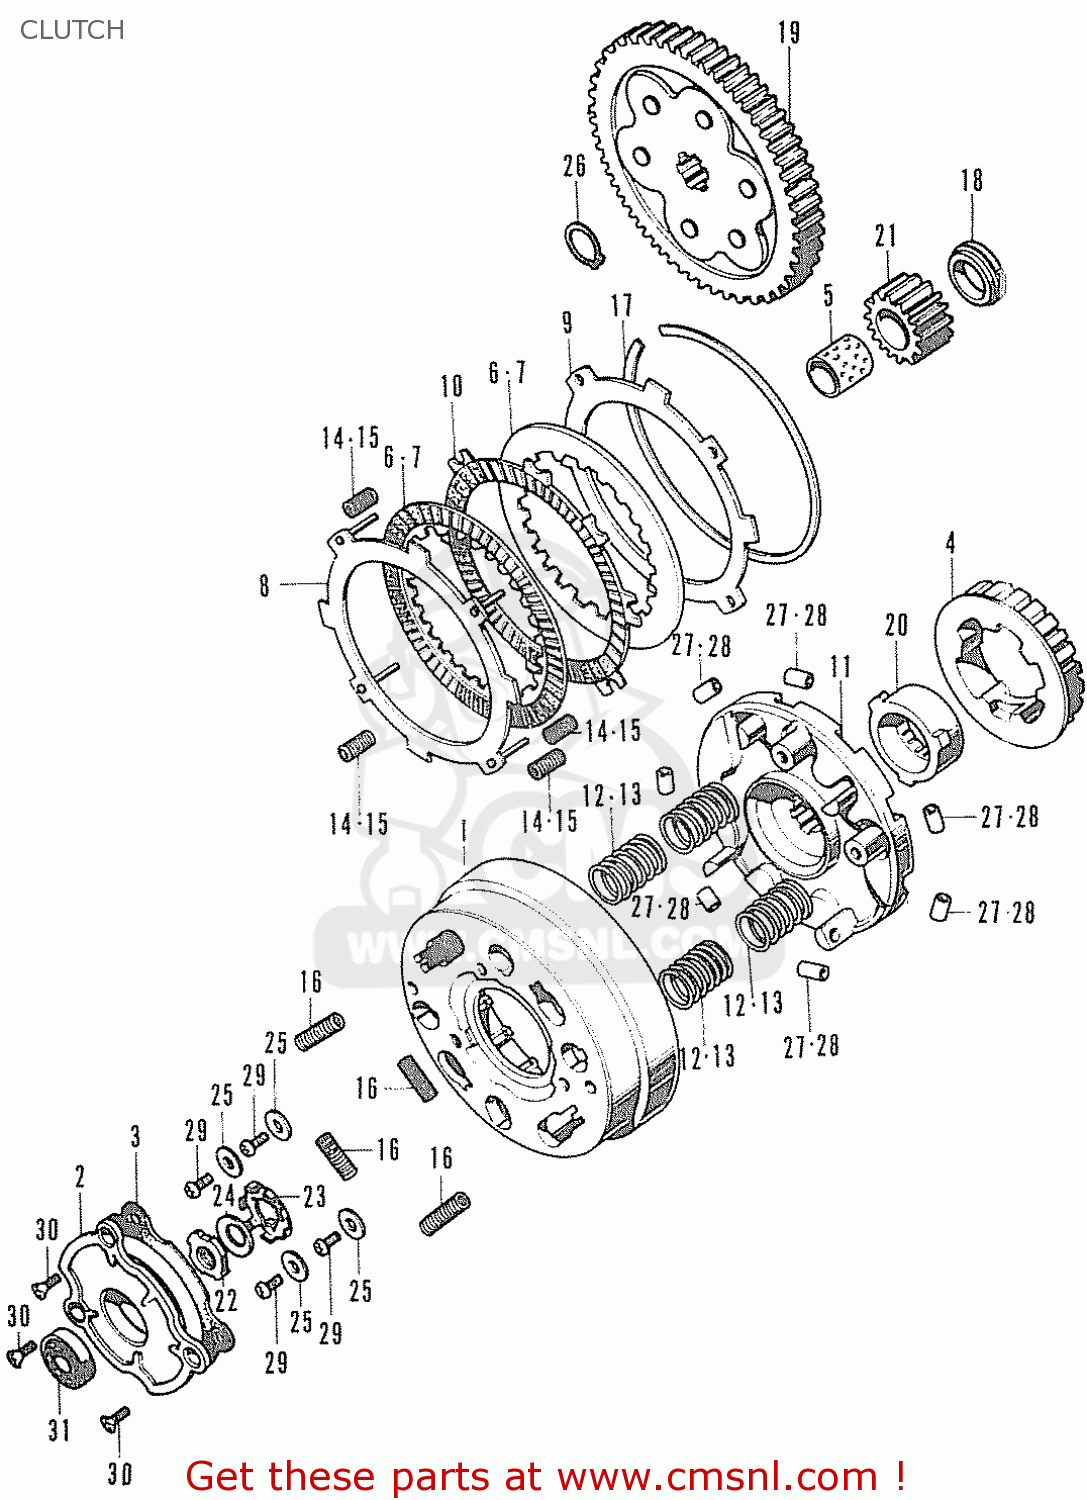 Honda chaly tuning parts #1